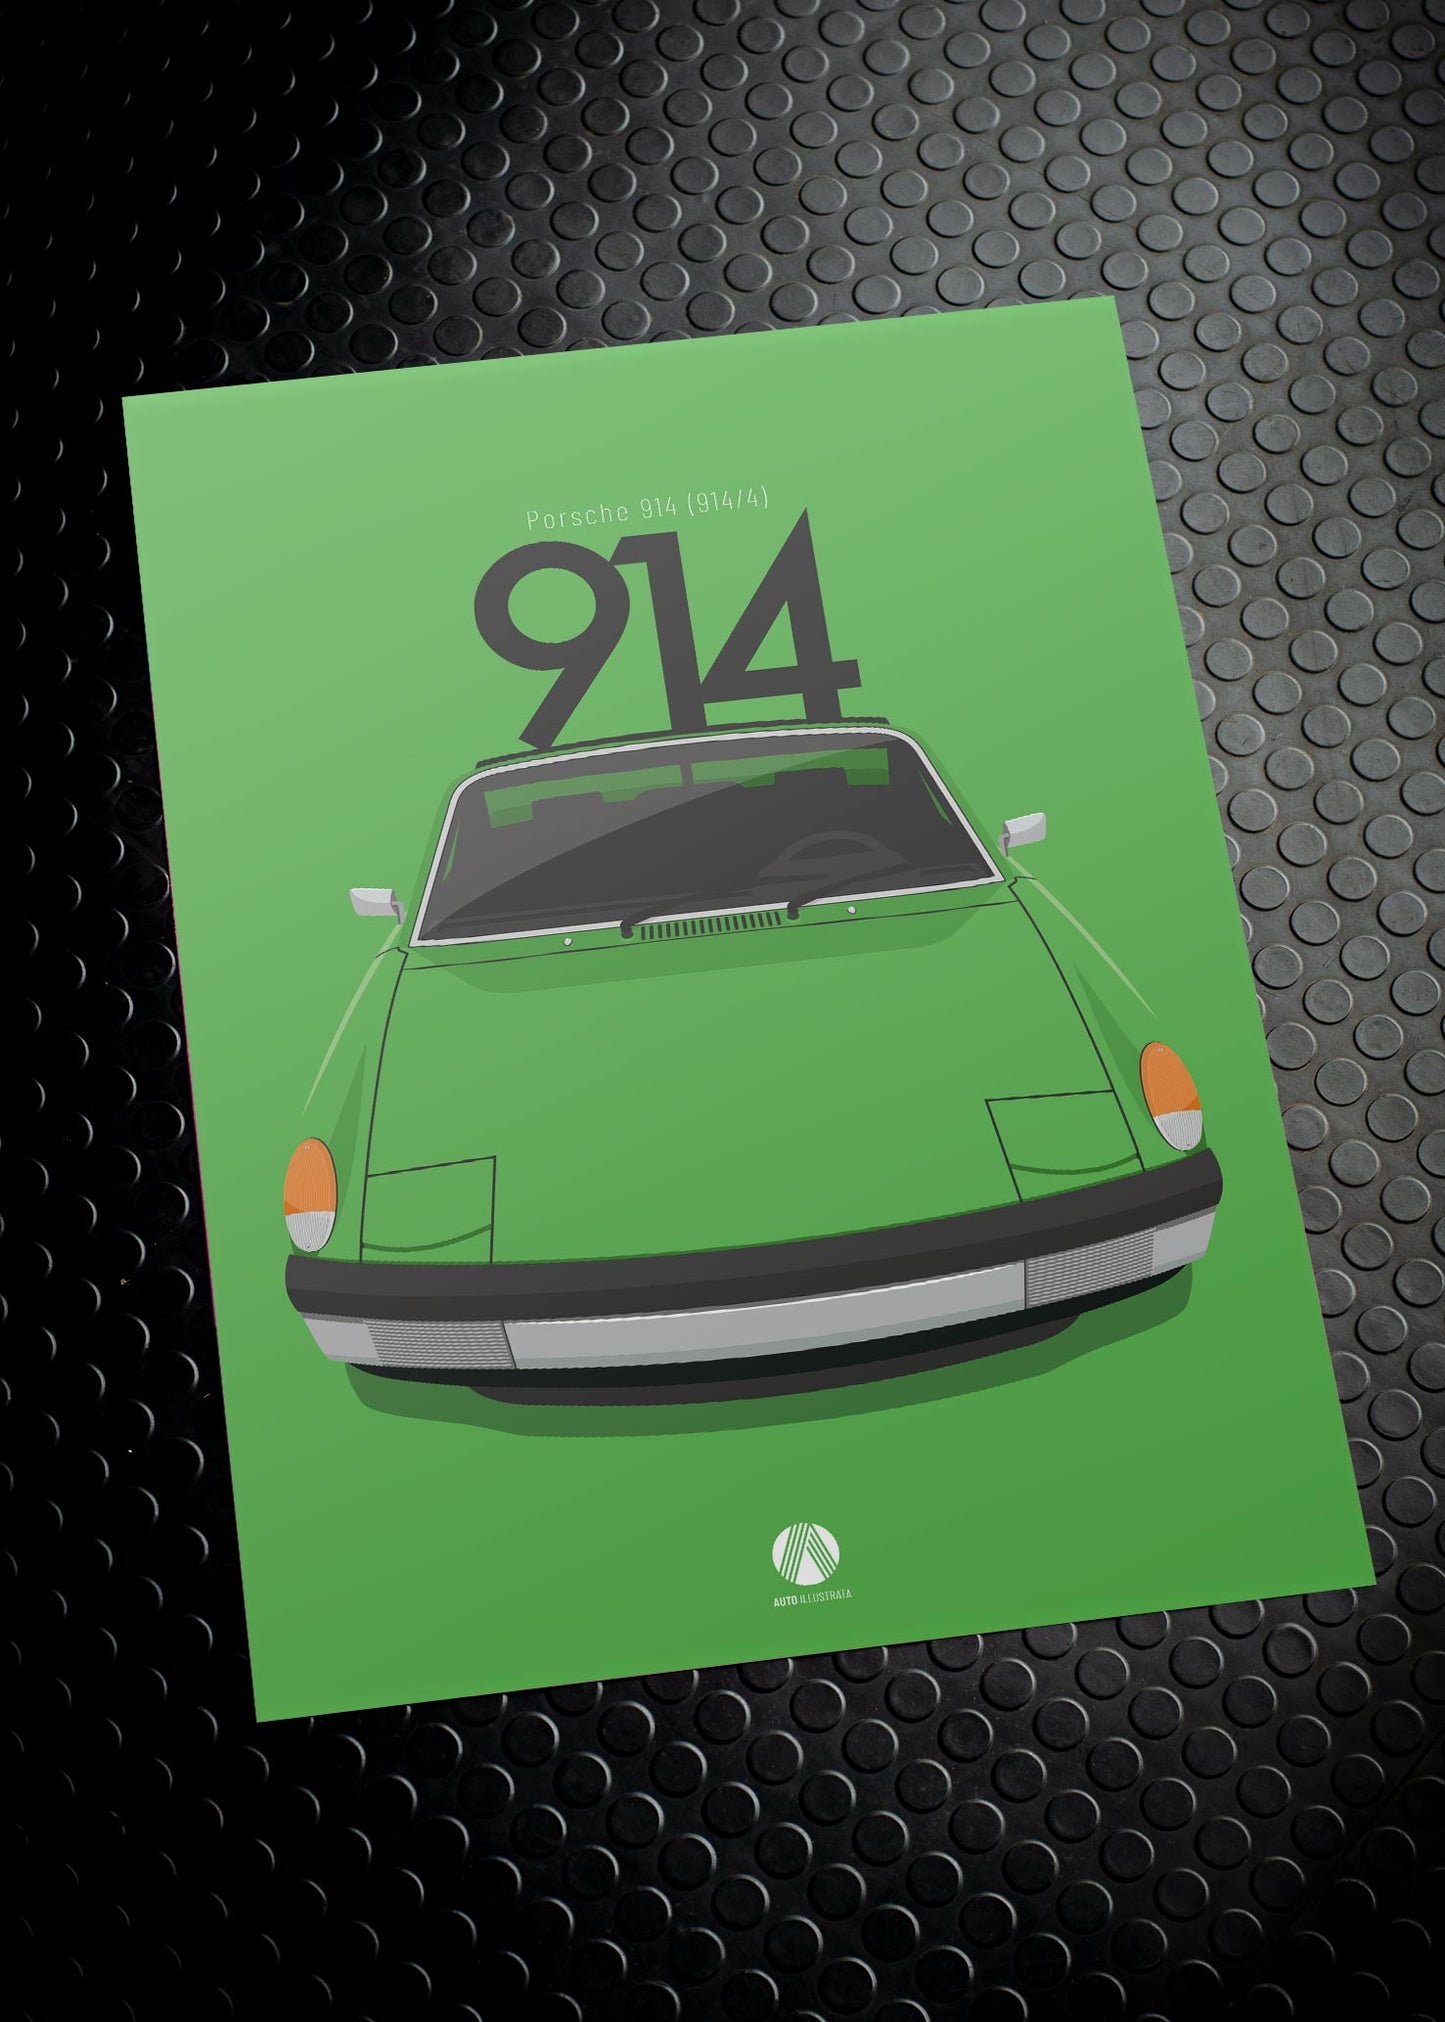 1970 Porsche 914 Zambezi Green - poster print